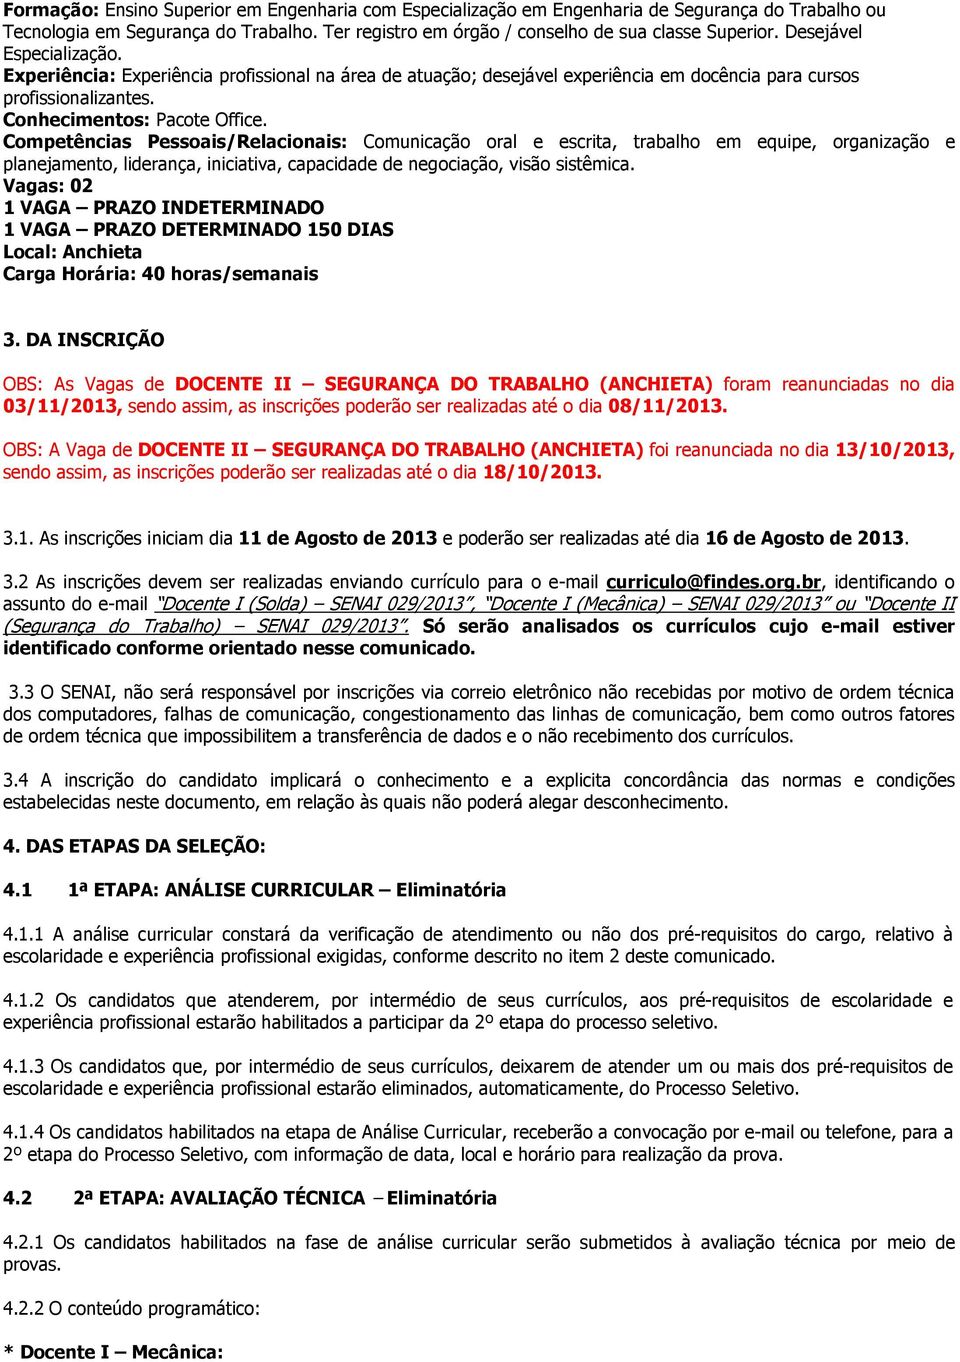 DA INSCRIÇÃO OBS: As Vagas de DOCENTE II SEGURANÇA DO TRABALHO (ANCHIETA) foram reanunciadas no dia 03/11/2013, sendo assim, as inscrições poderão ser realizadas até o dia 08/11/2013.